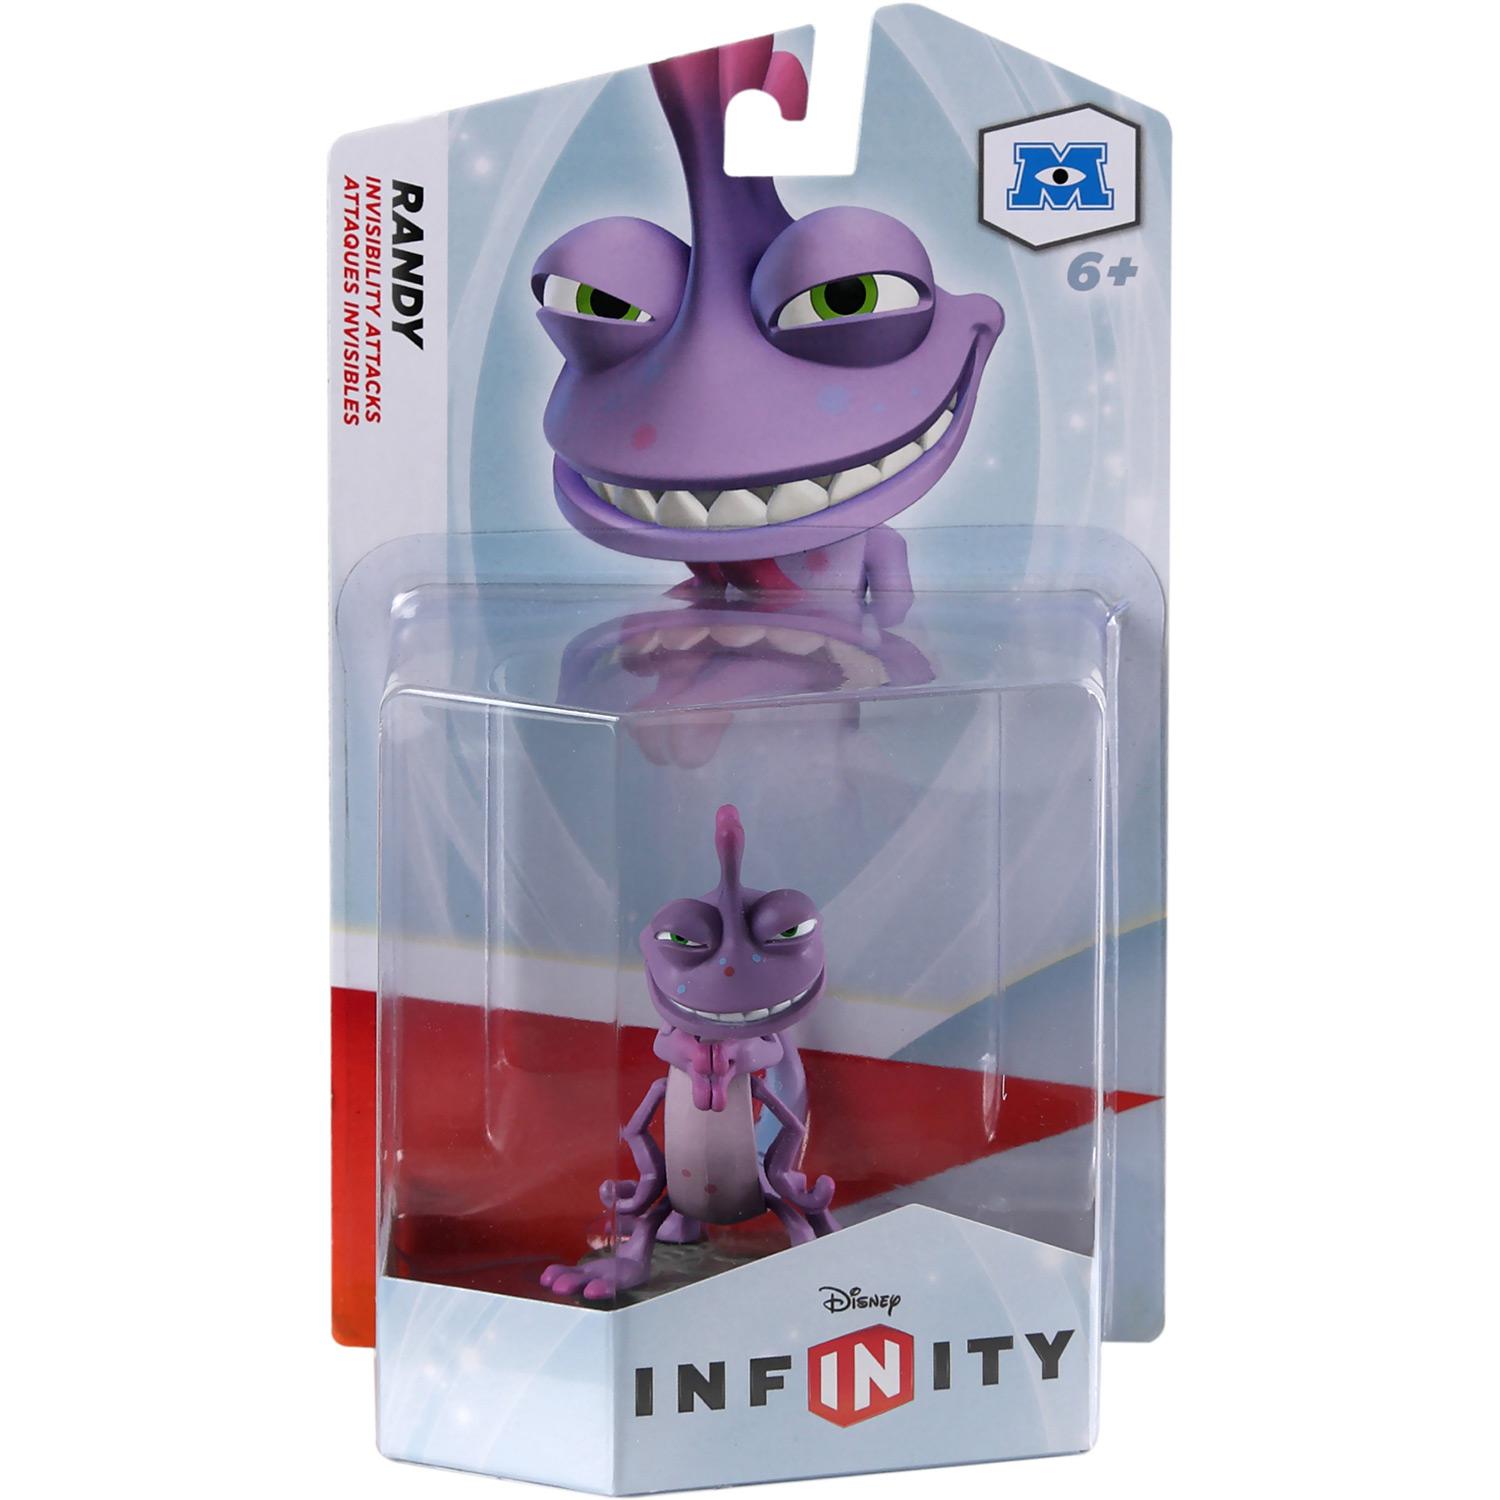 Boneco Disney Infinity - Randy (Personagem Individual) - PS3/ XBOX 360/ Wii/ Wii U/ 3DS é bom? Vale a pena?